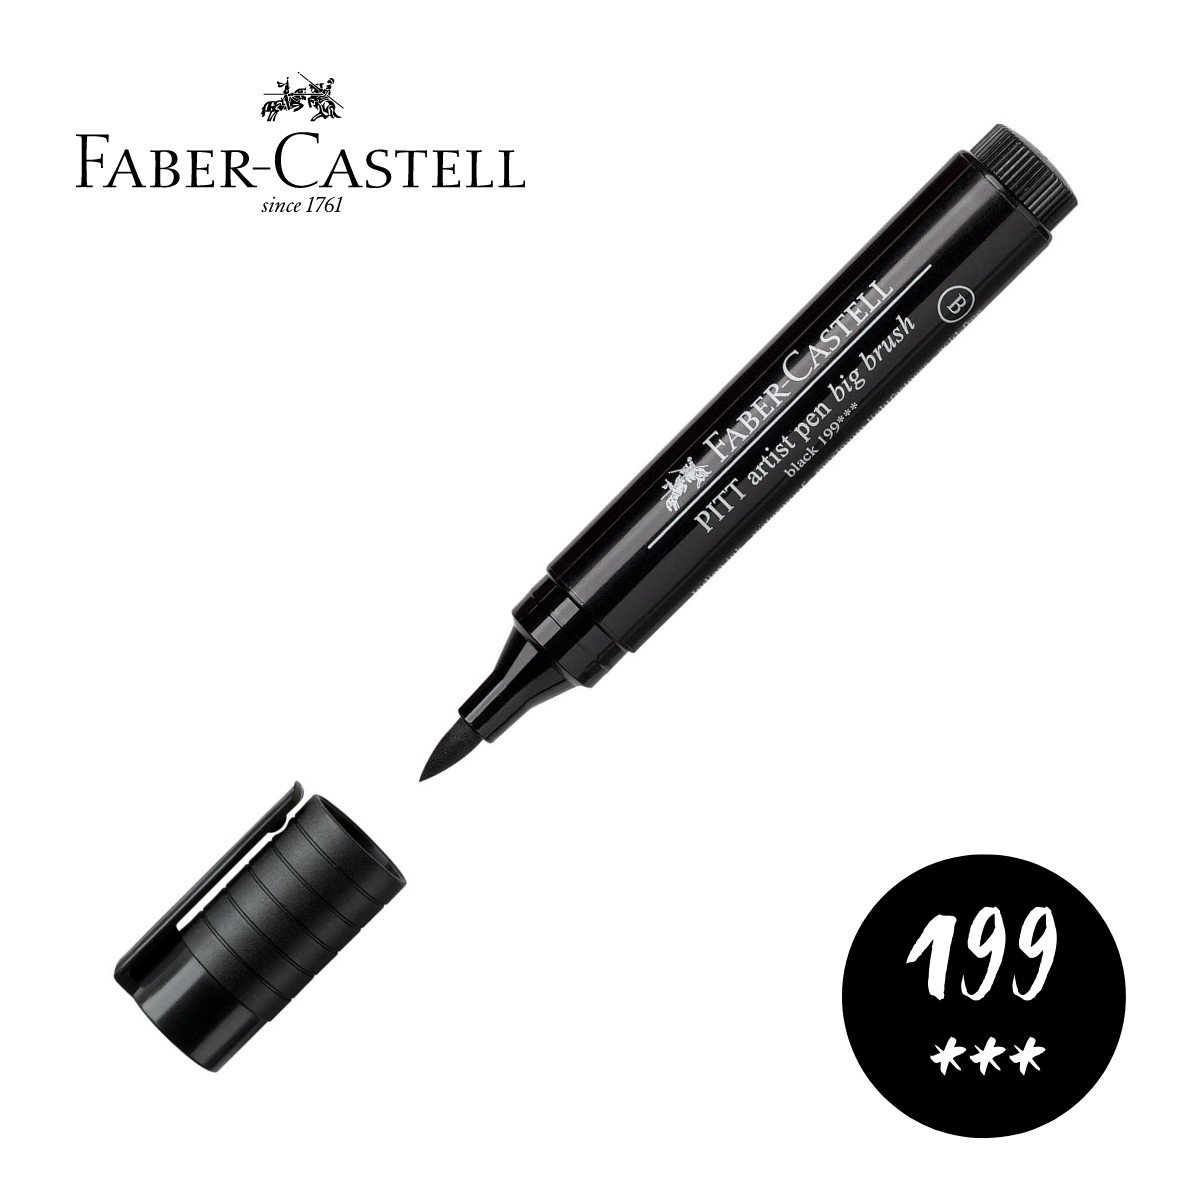 Feutre pinceau noir Pitt Artist Brush Pen n°199 Faber Castell